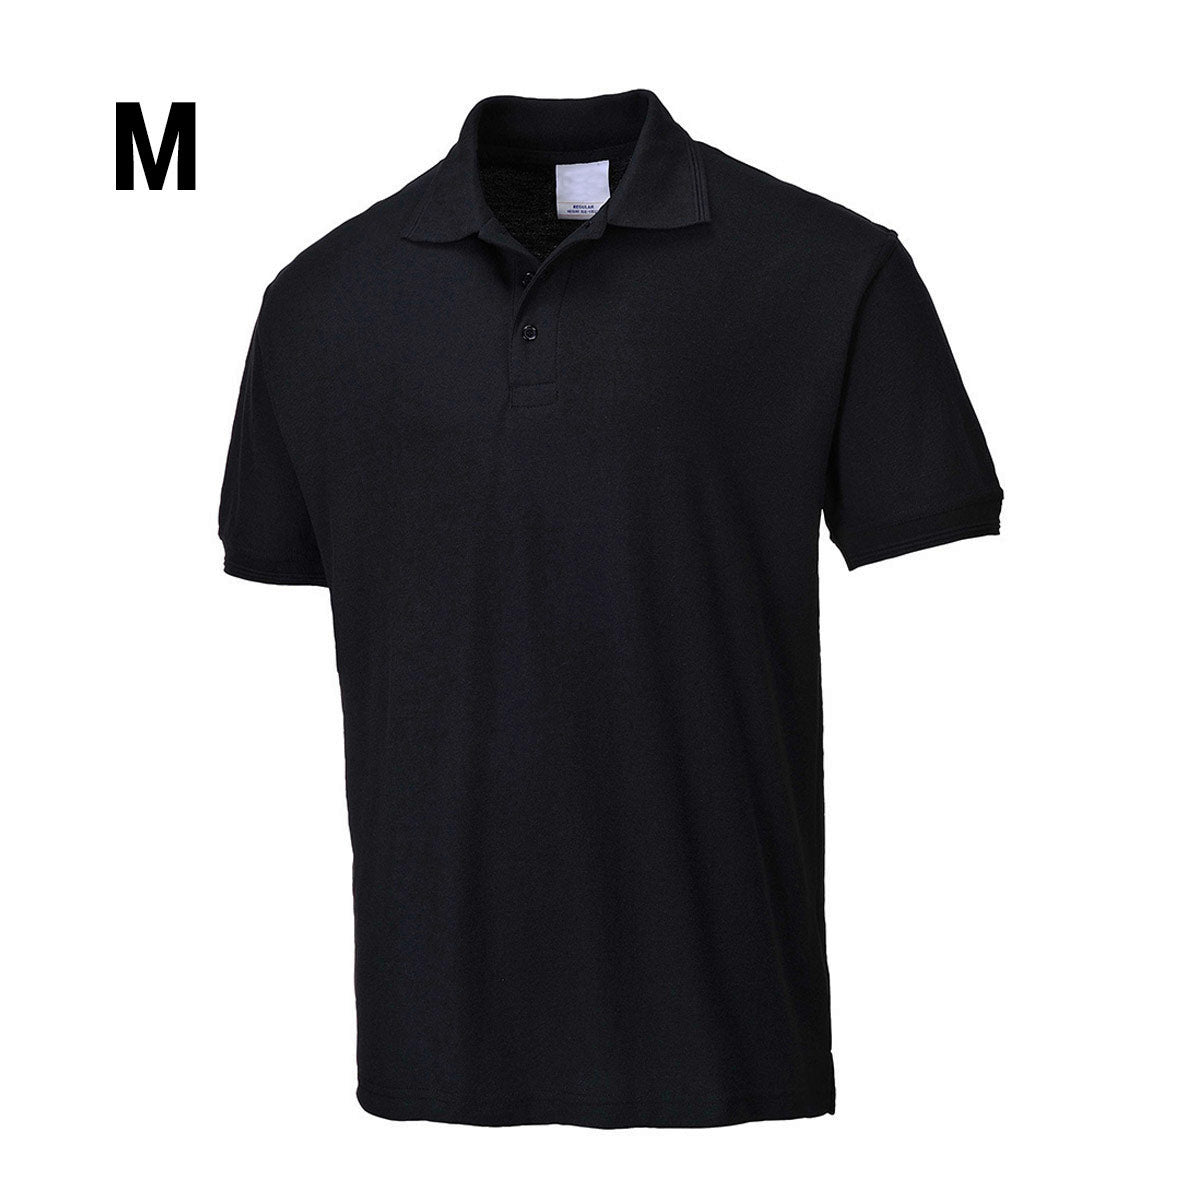 Poloshirt til mænd - Sort - Størrelse: M